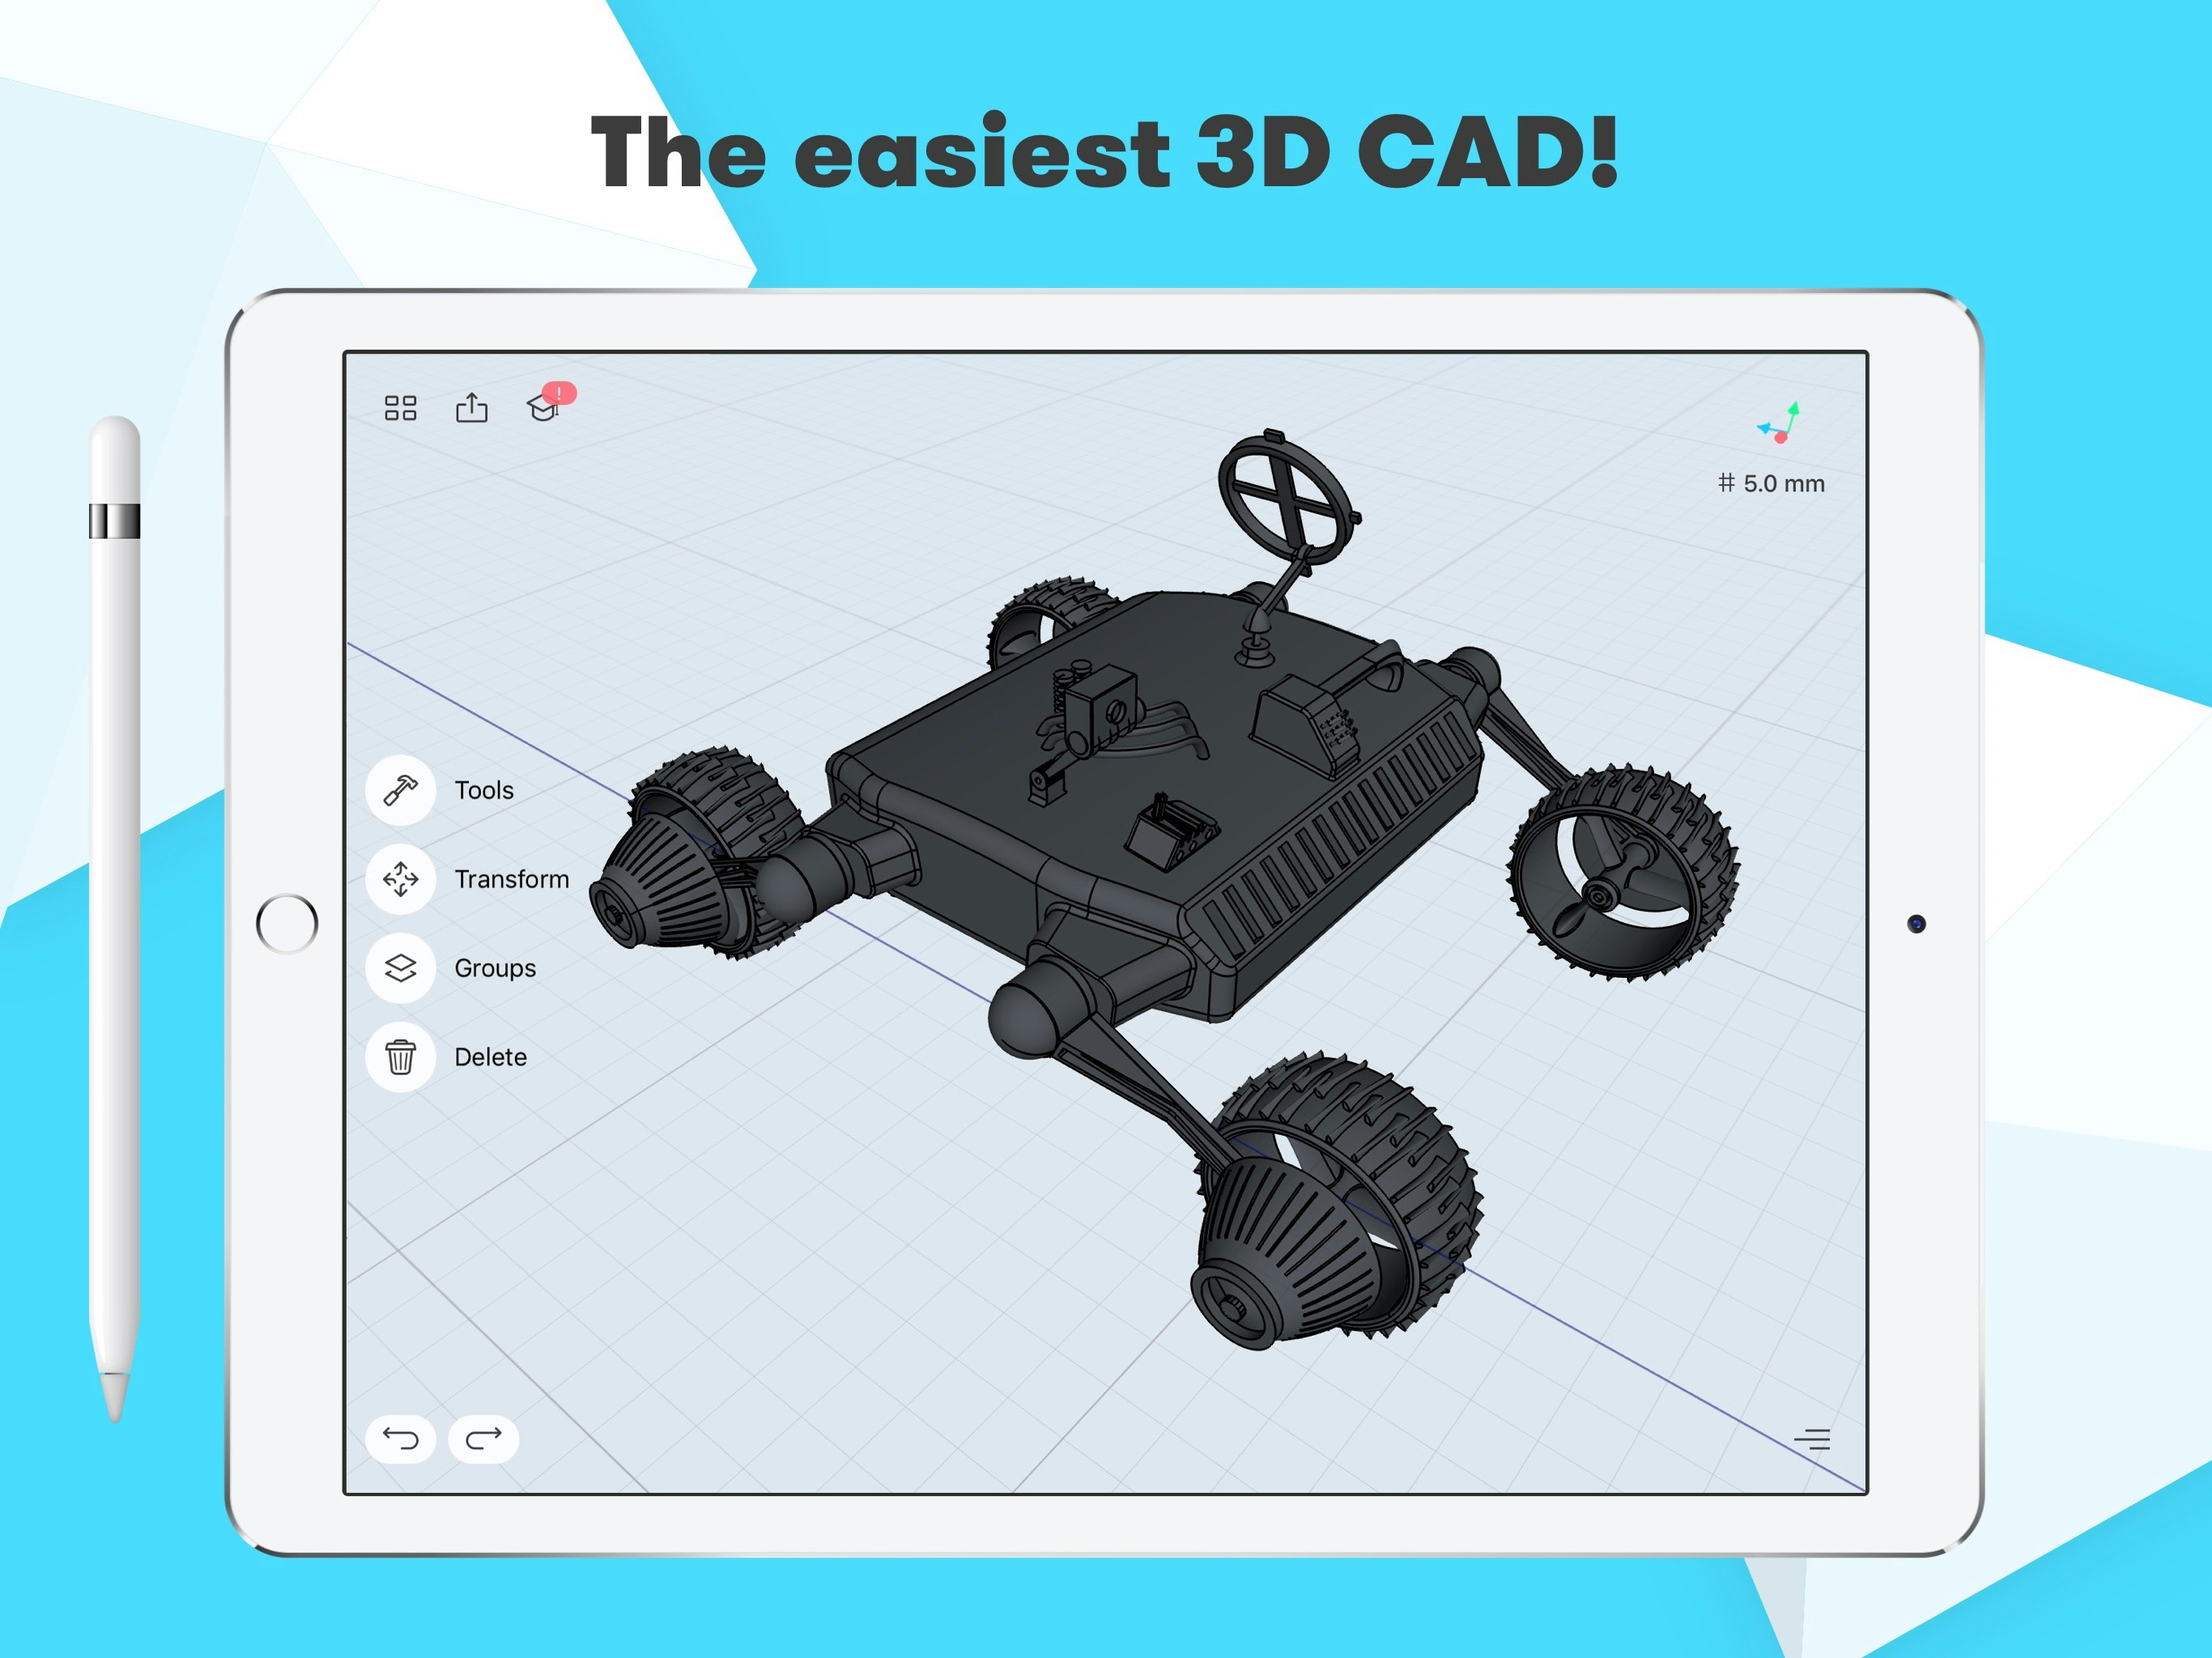 Shapr3D là một sản phẩm tuyệt vời dành cho các nhà thiết kế. Với tính năng dễ sử dụng, chúng ta có thể thiết kế nhanh chóng và chính xác các đồ vật 3D. Hãy xem hình ảnh để tìm hiểu thêm về sản phẩm, cập nhật mới nhất và nhận được những đánh giá tích cực.